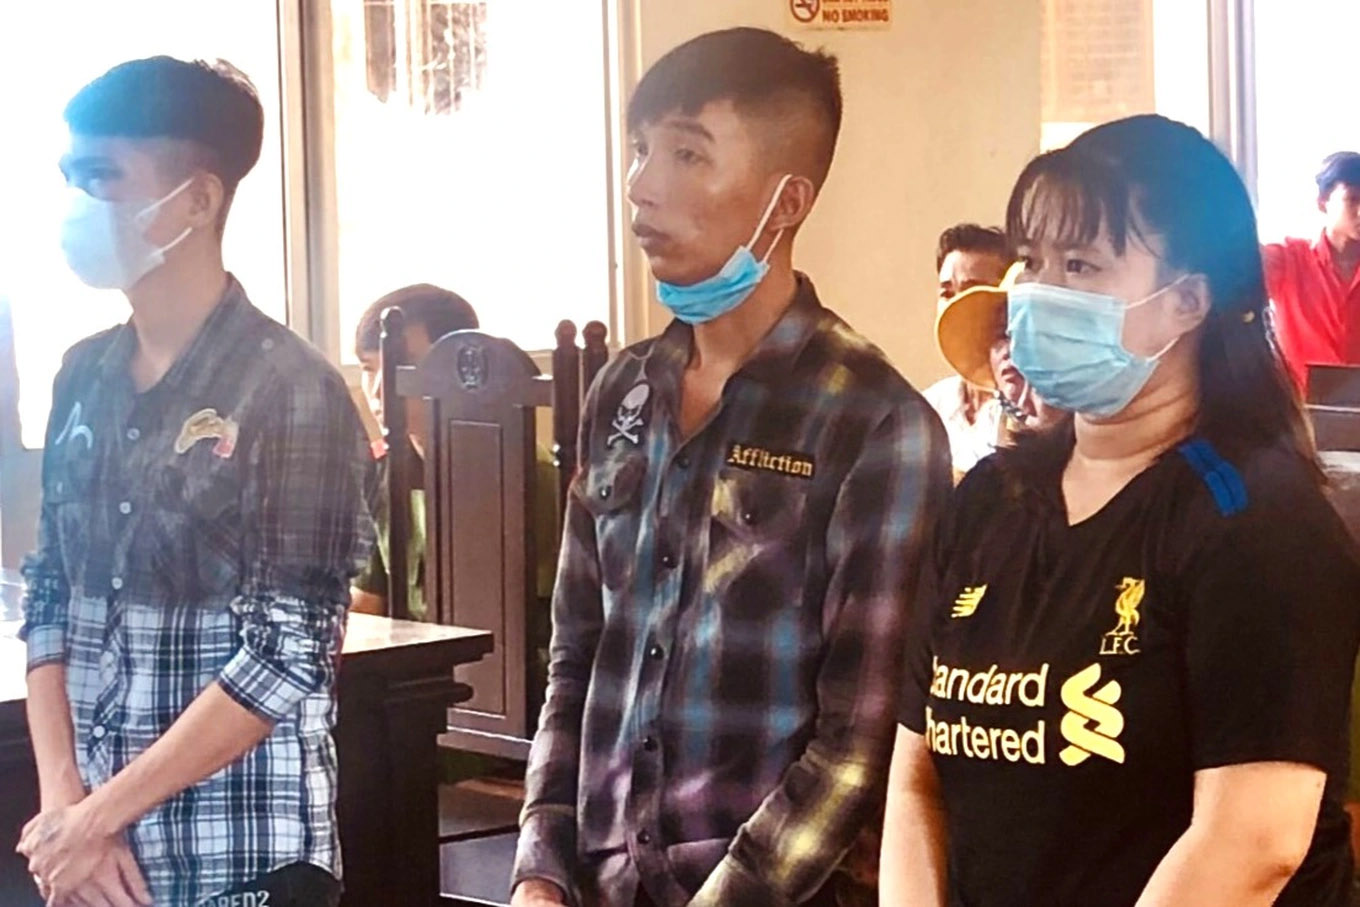 Tin lời em gái hiền lành, 2 thanh niên bị lừa bán sang Campuchia-1